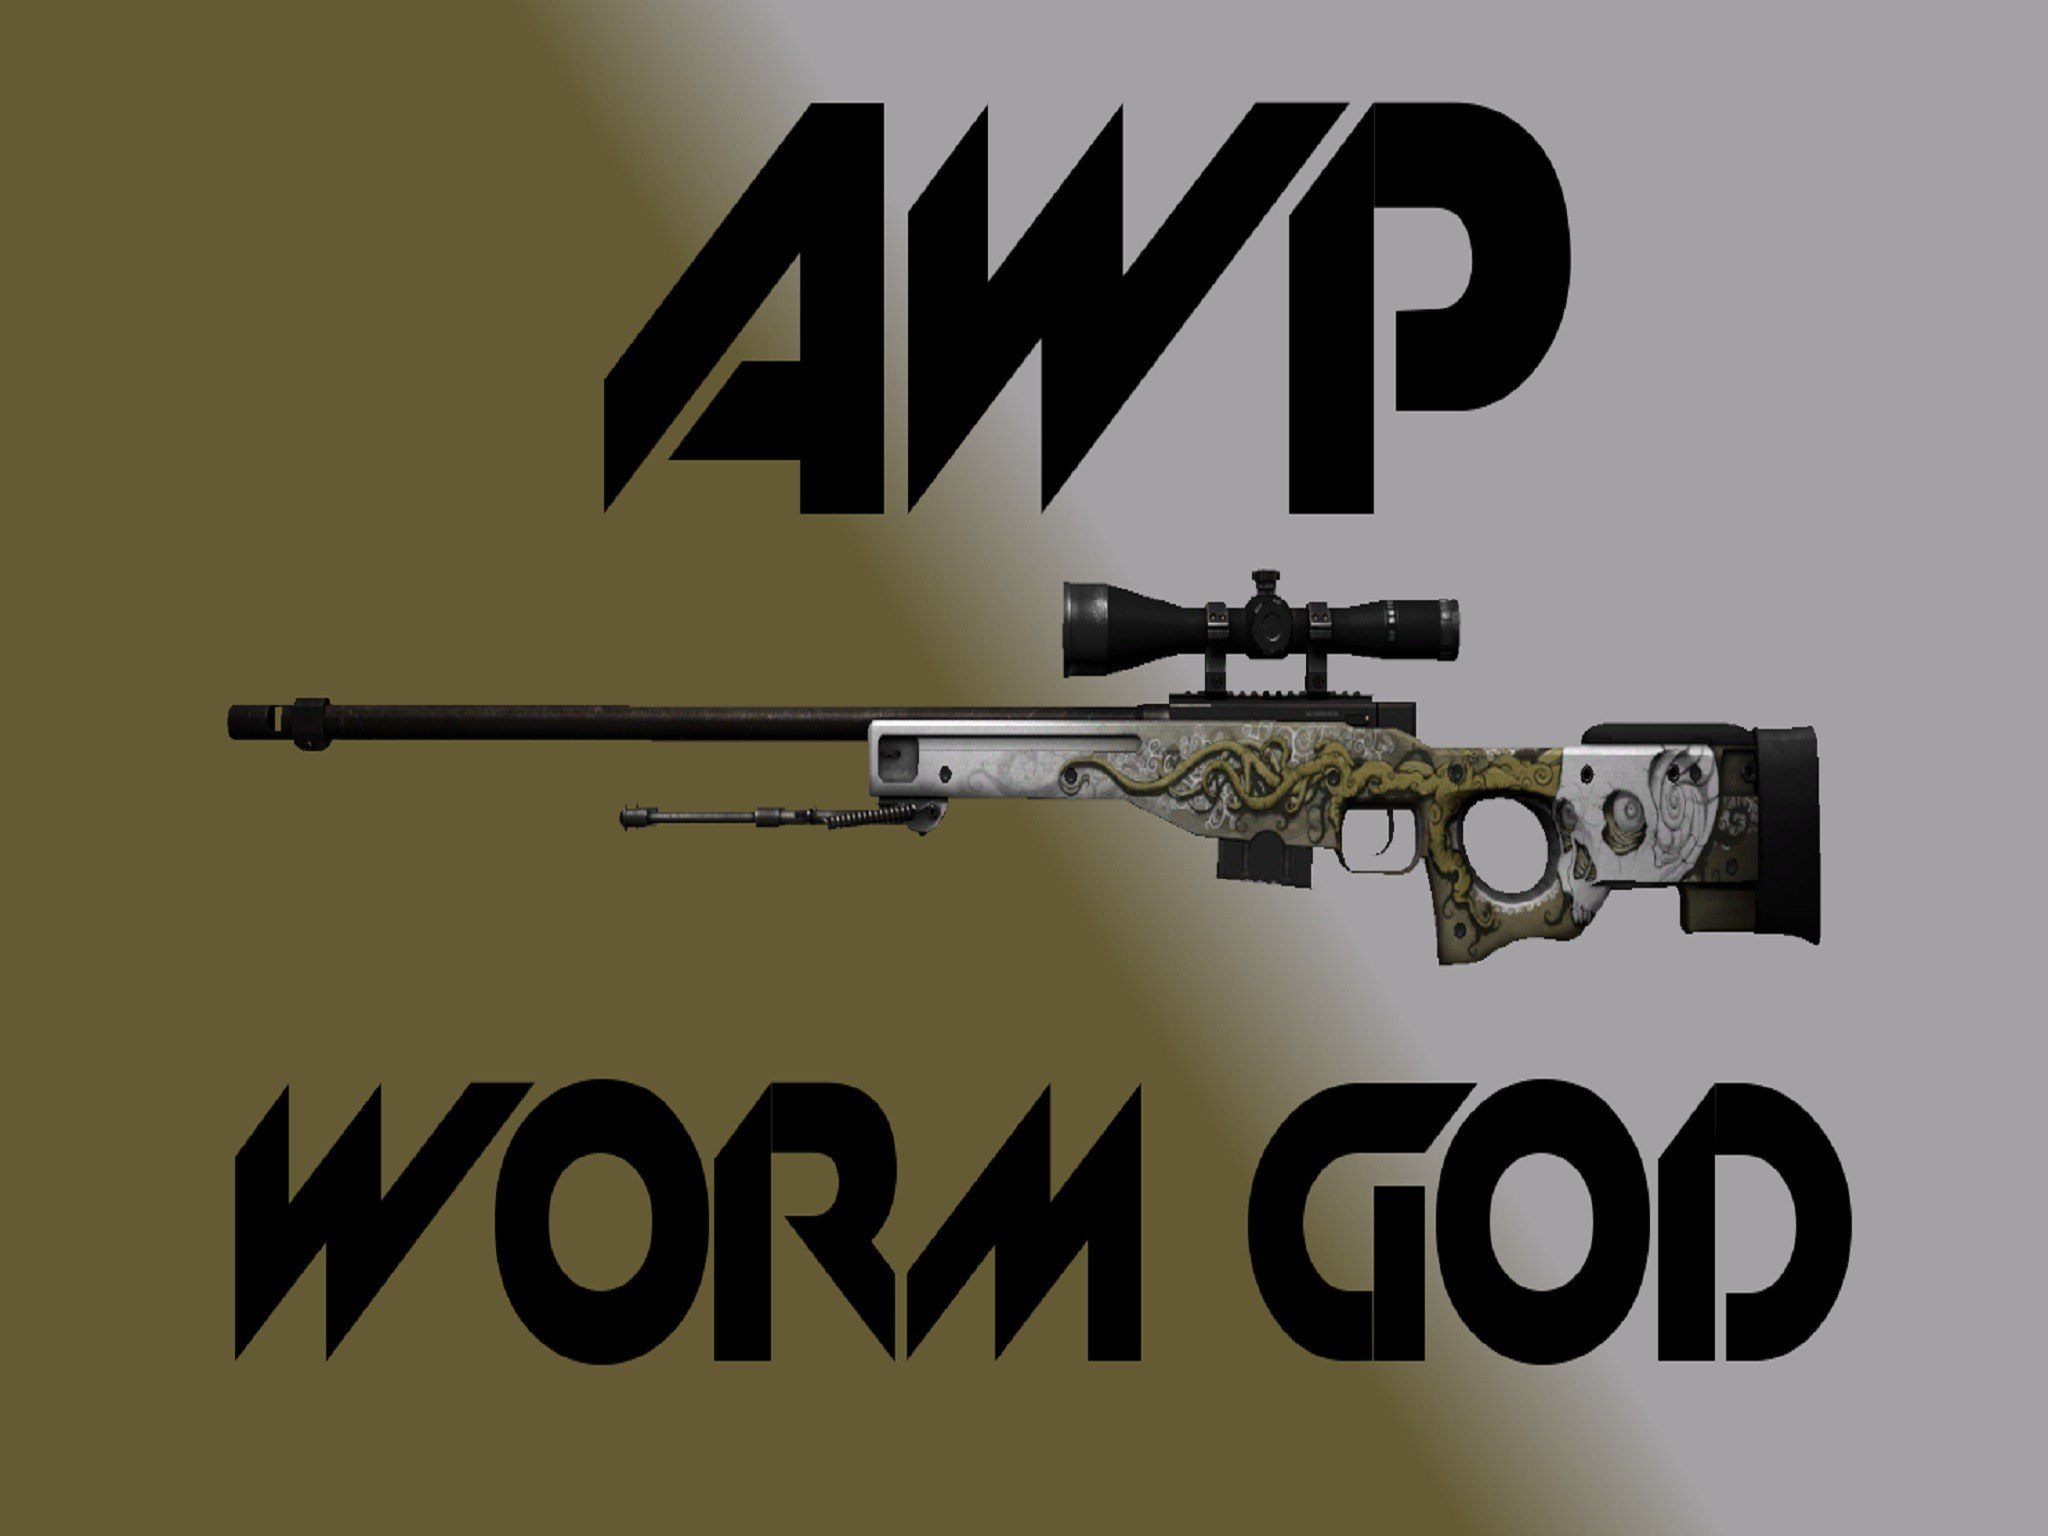 Awp worm god. АВП Бог червей. АВМ Бог червей. AWP Бог червей. Бог червей КС го.